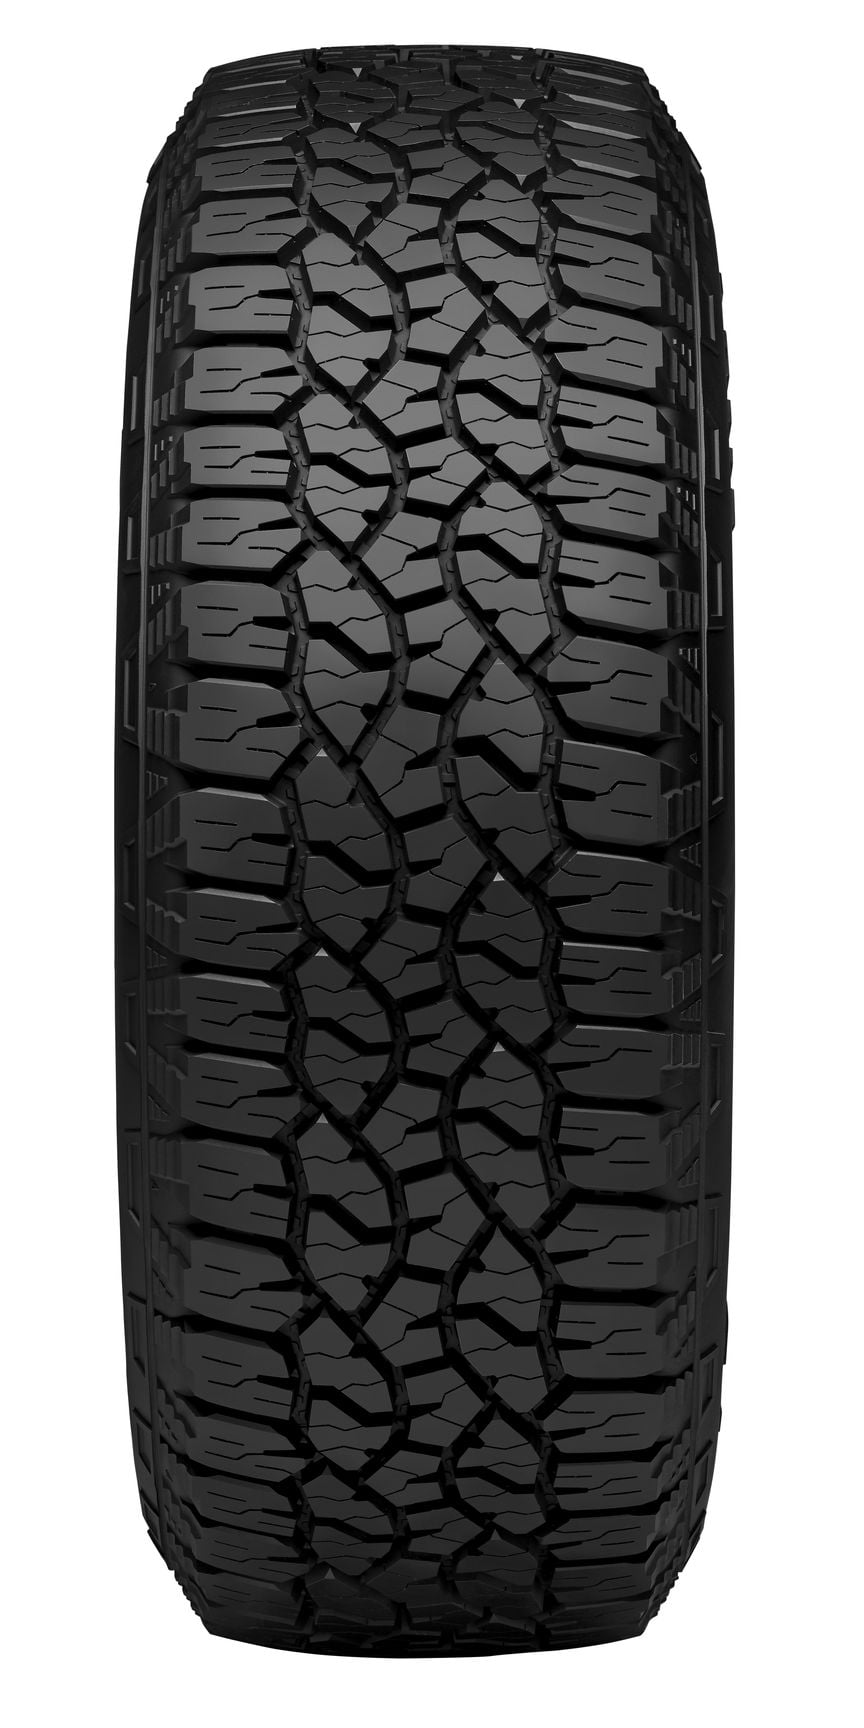 Goodyear Wrangler TrailRunner AT All-Season 245/60R18 105T Tire -  